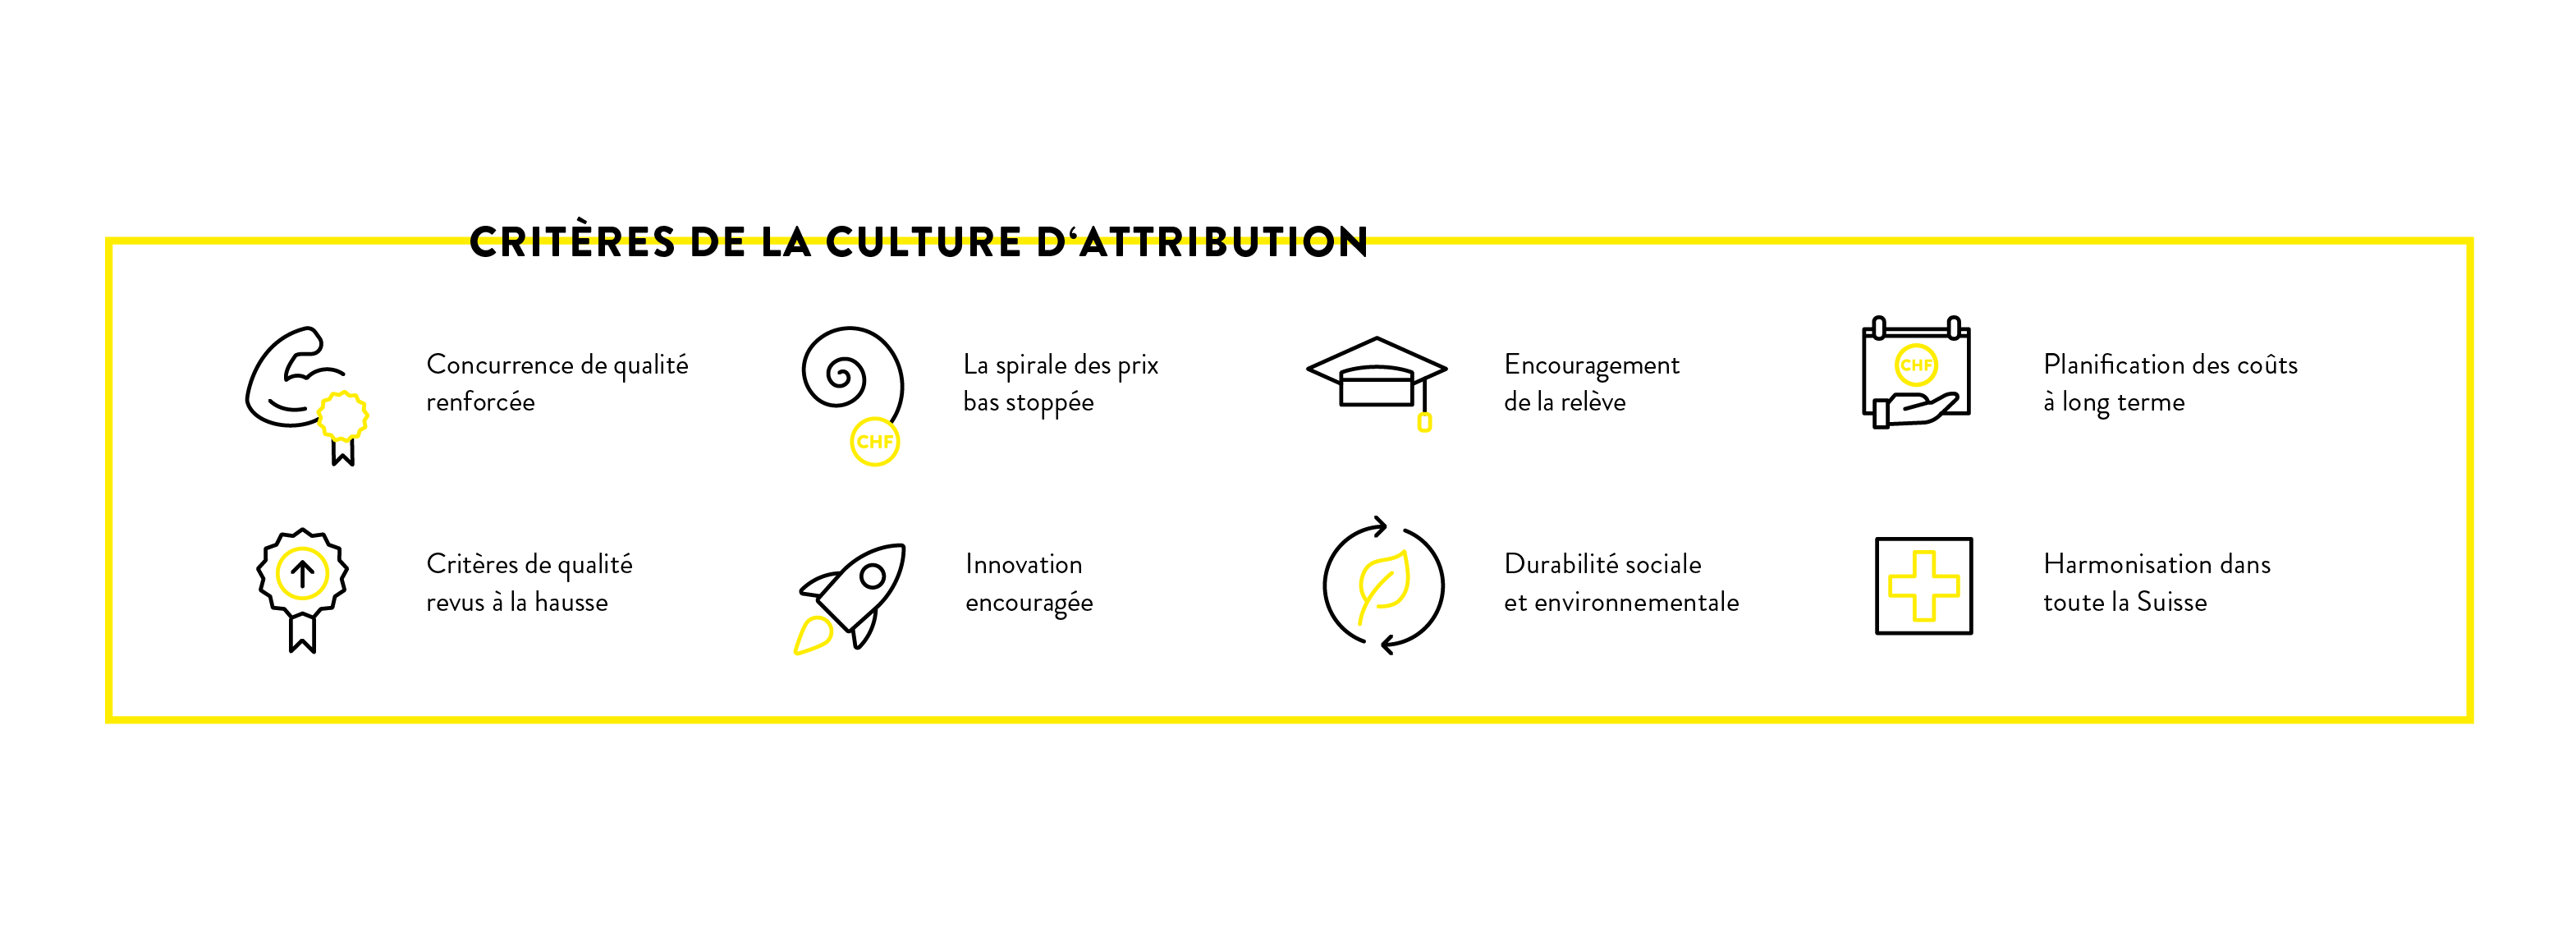 Critères de la culture d'attribution